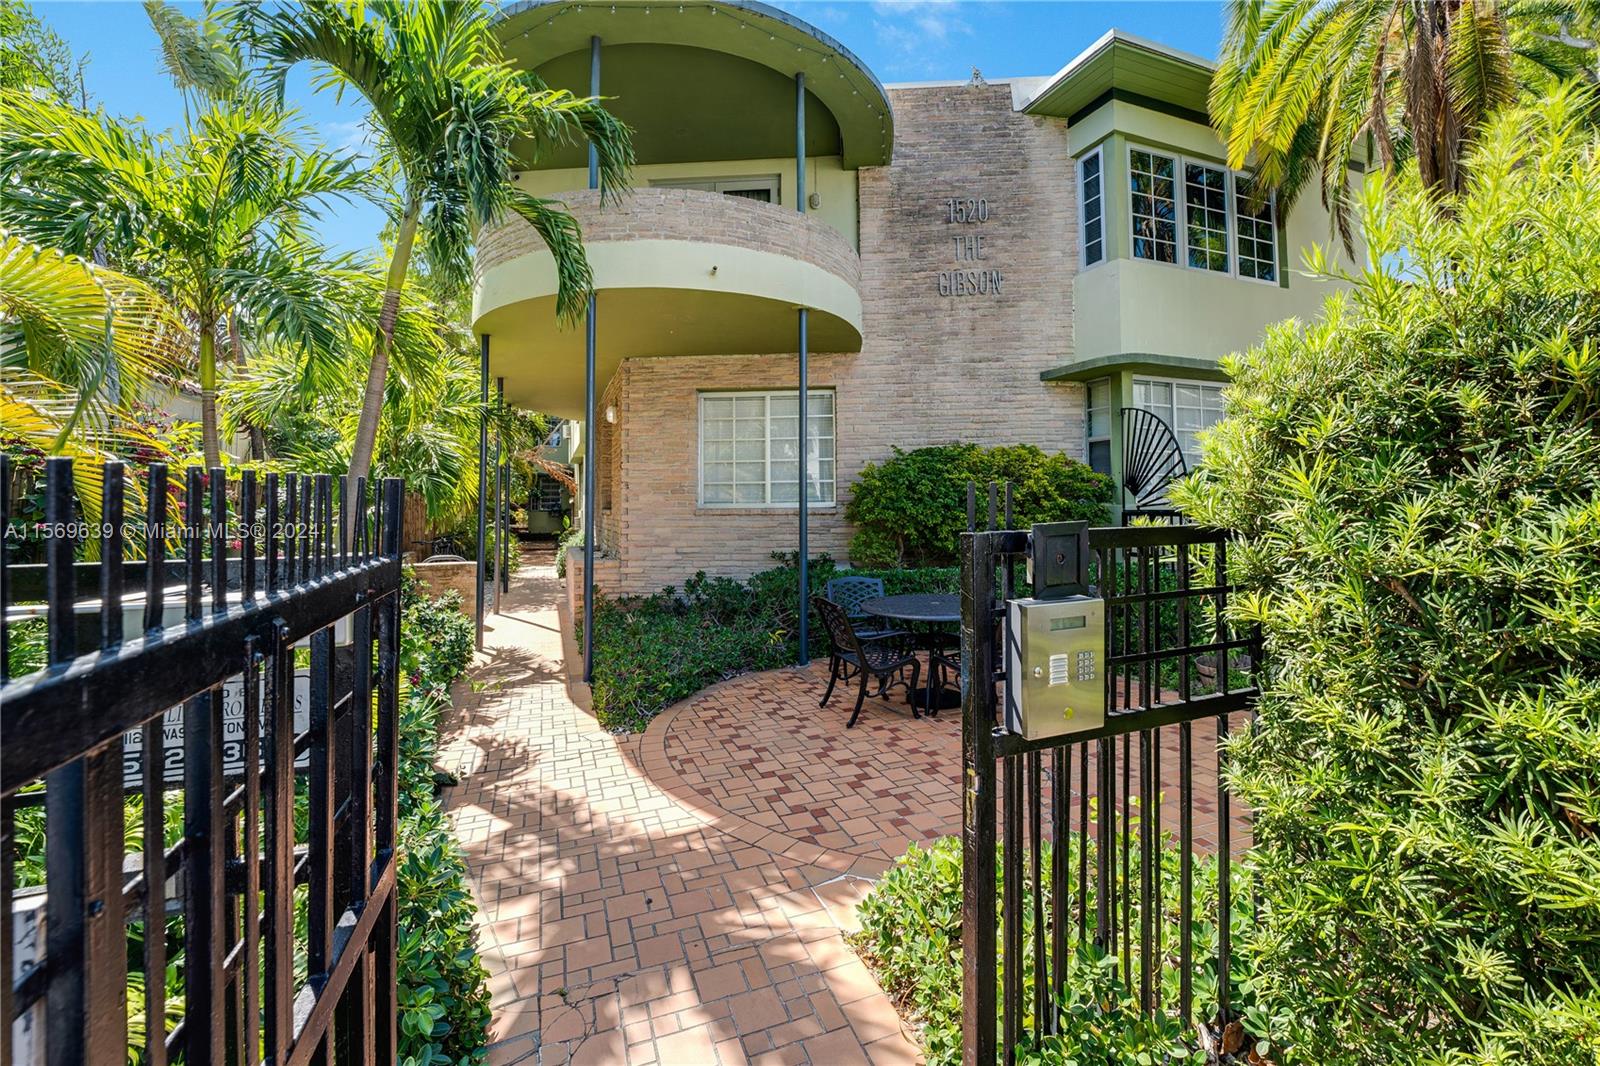 Rental Property at 1520 Euclid Ave 9, Miami Beach, Miami-Dade County, Florida - Bathrooms: 1  - $1,875 MO.